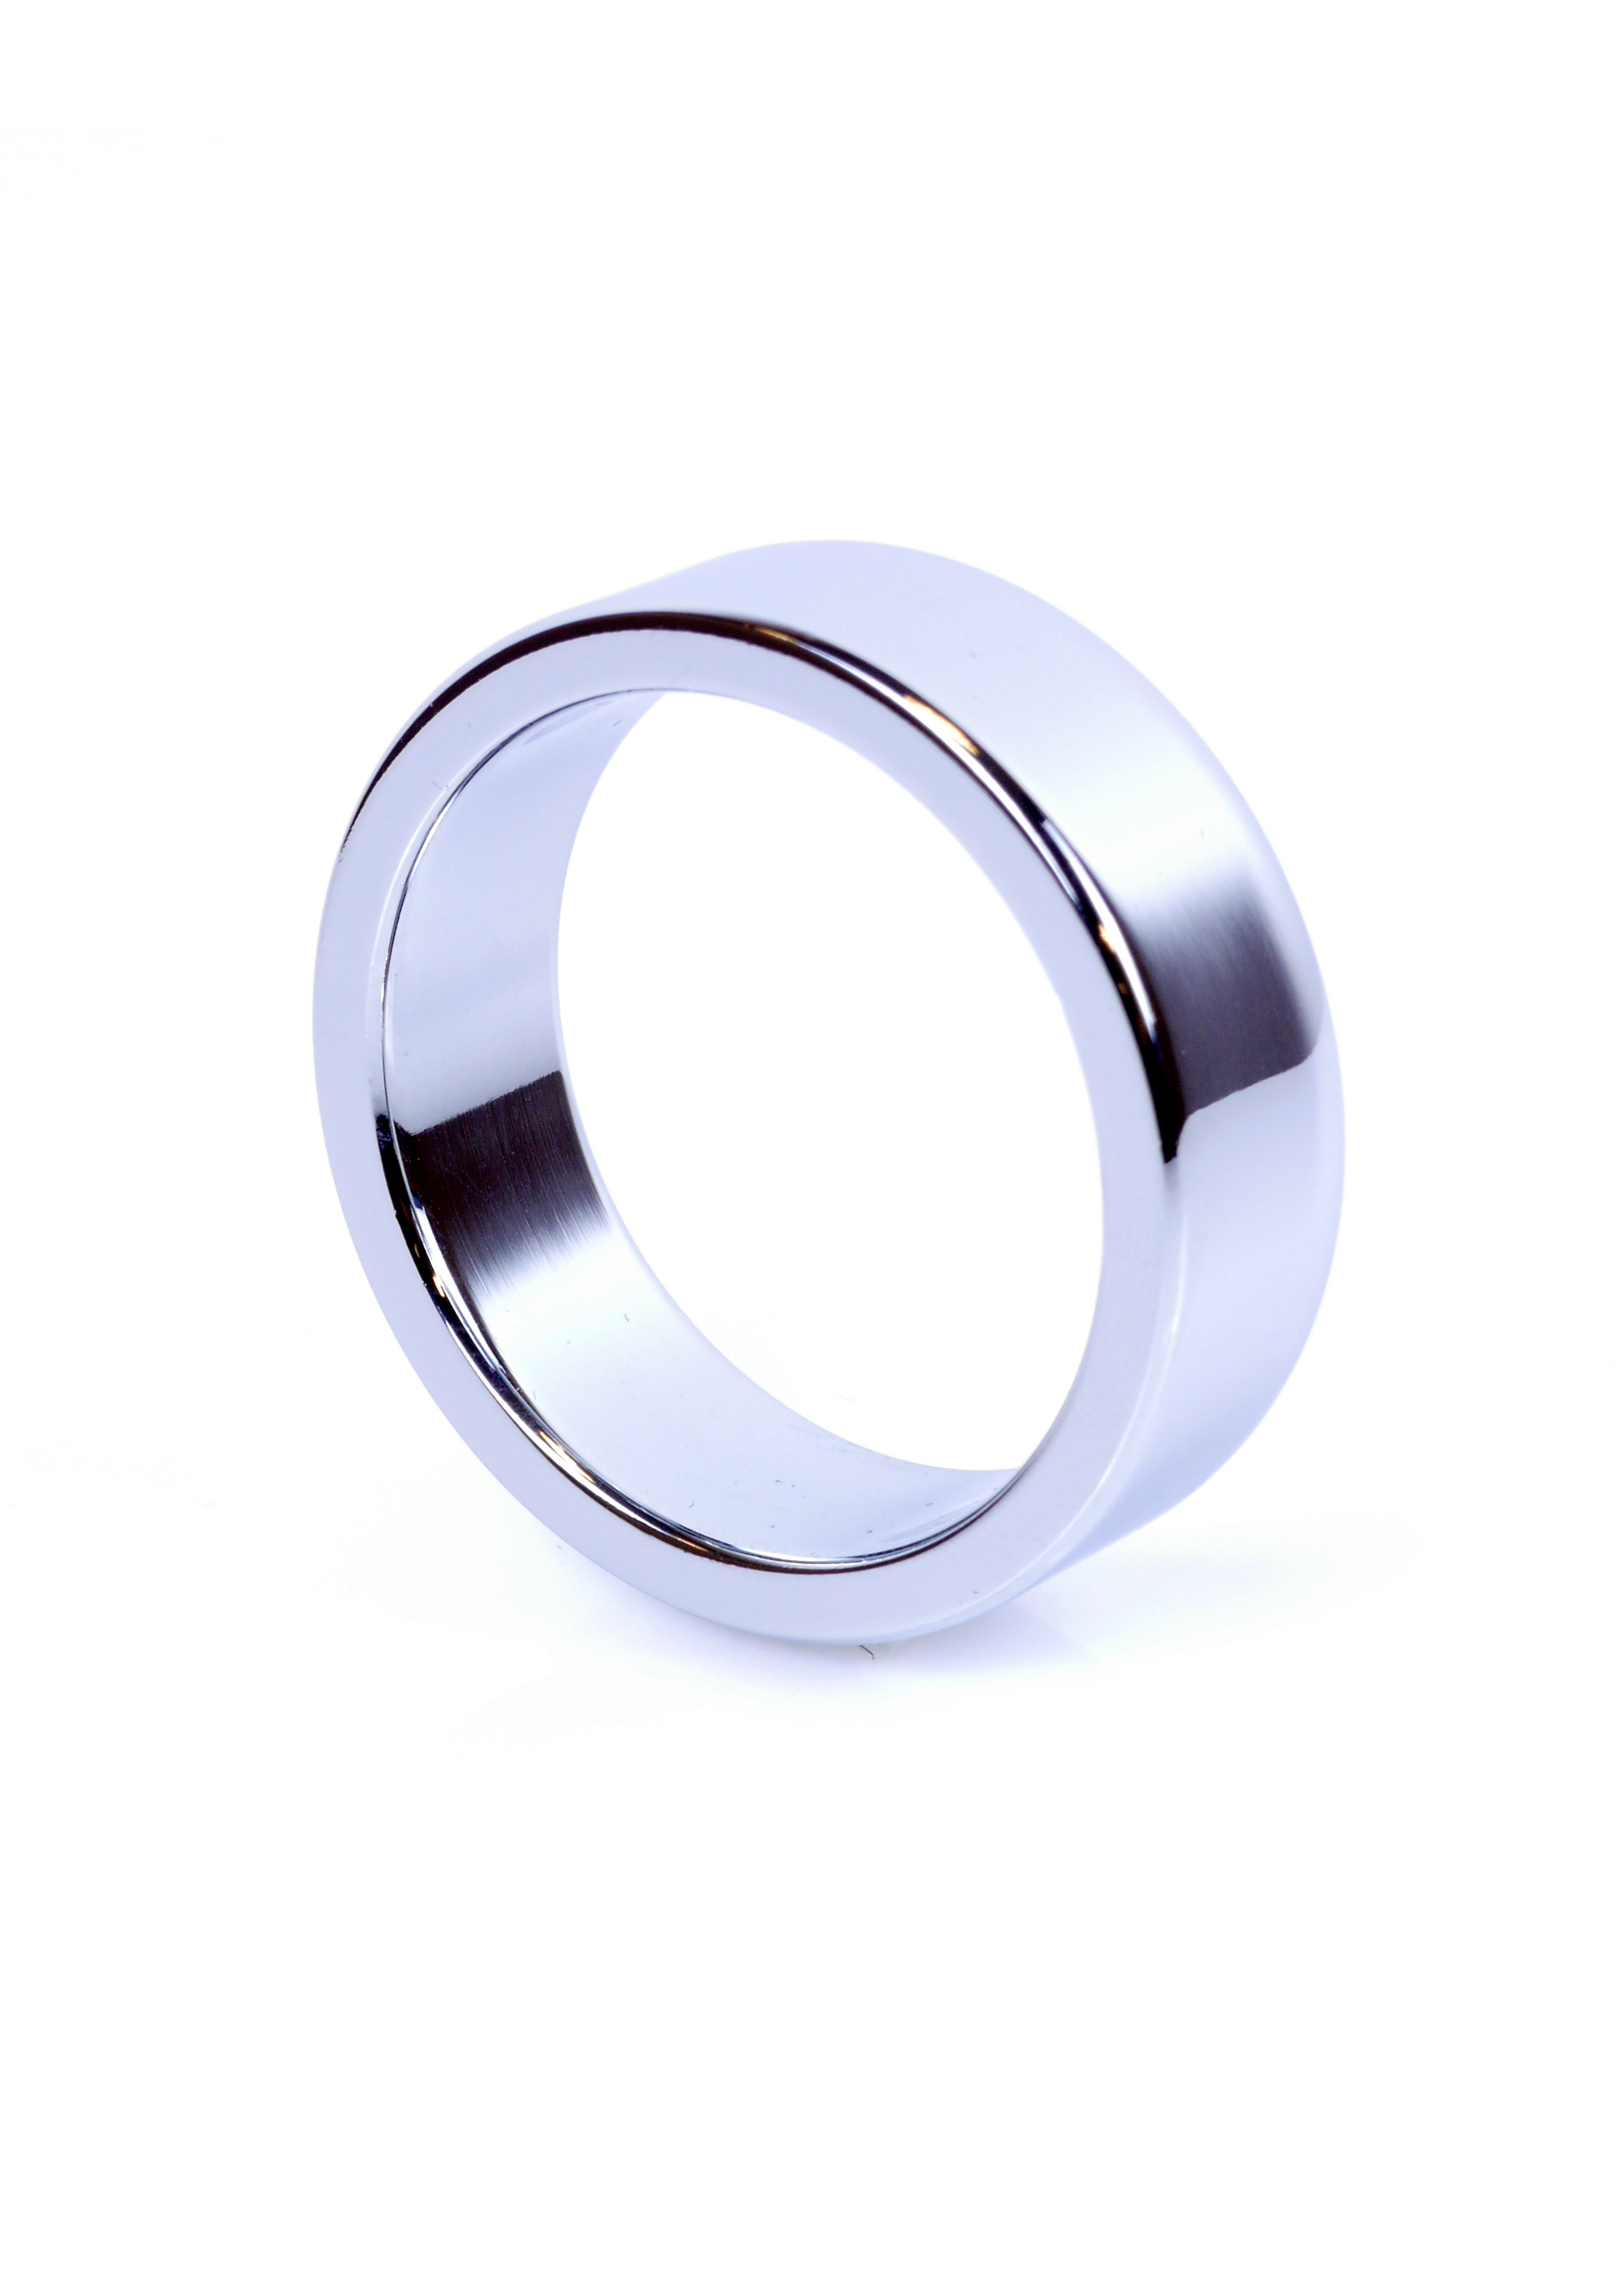 Boss Series Metal Cock Ring Medium - metalowy pierścień erekcyjny ▶️▶️ DYSKRETNIE ▶️ GWARANCJA ▶️ PRZESYŁKA 24h ▶️